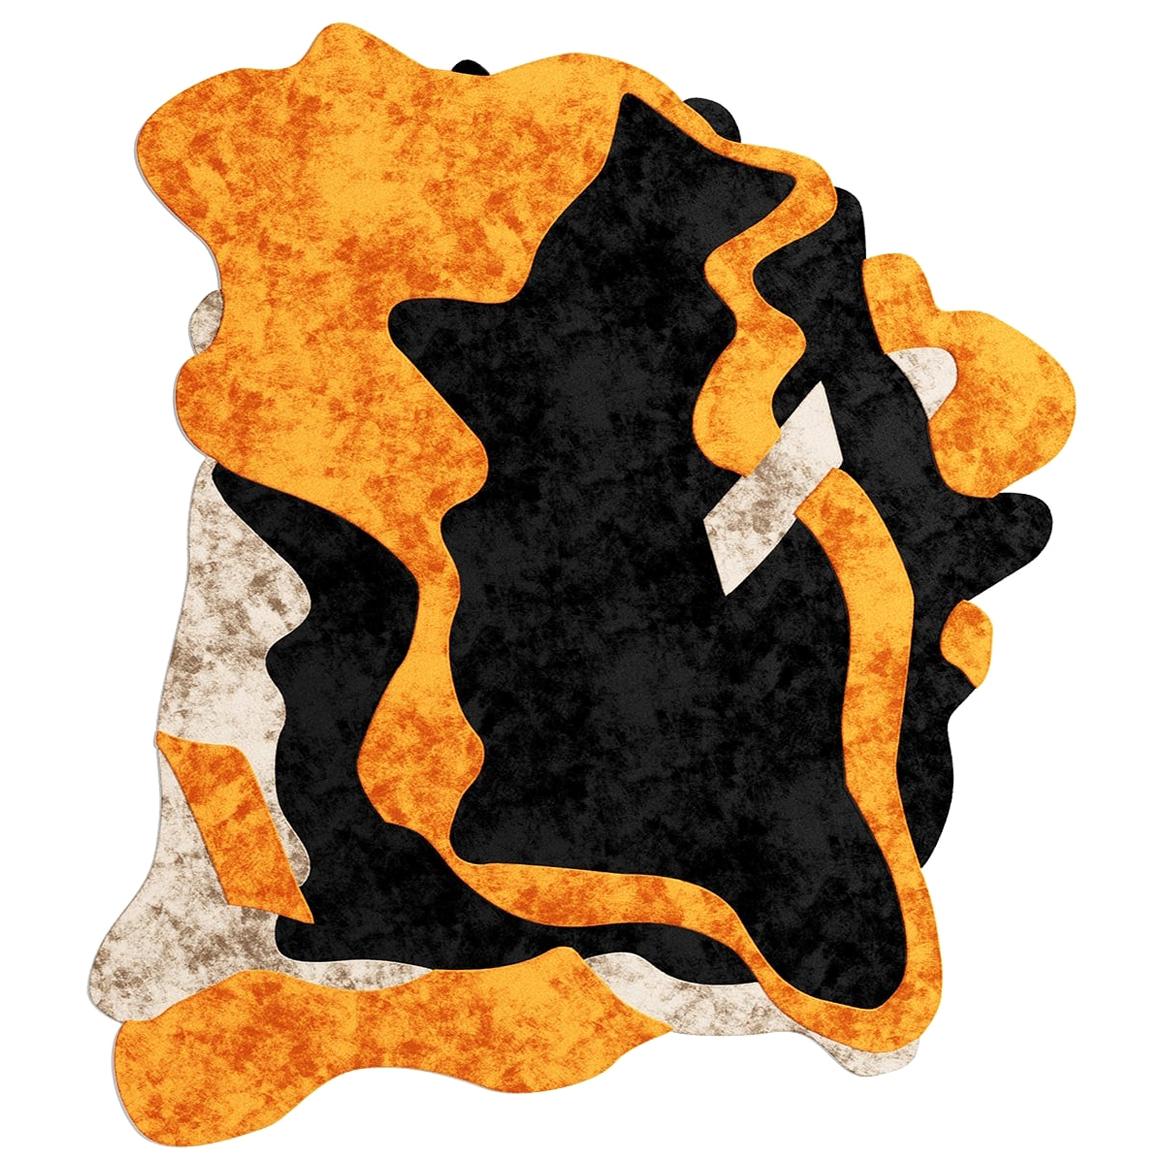 Tapis du 21e siècle moderne à design abstrait, touffeté à la main en laine orange, noire et beige